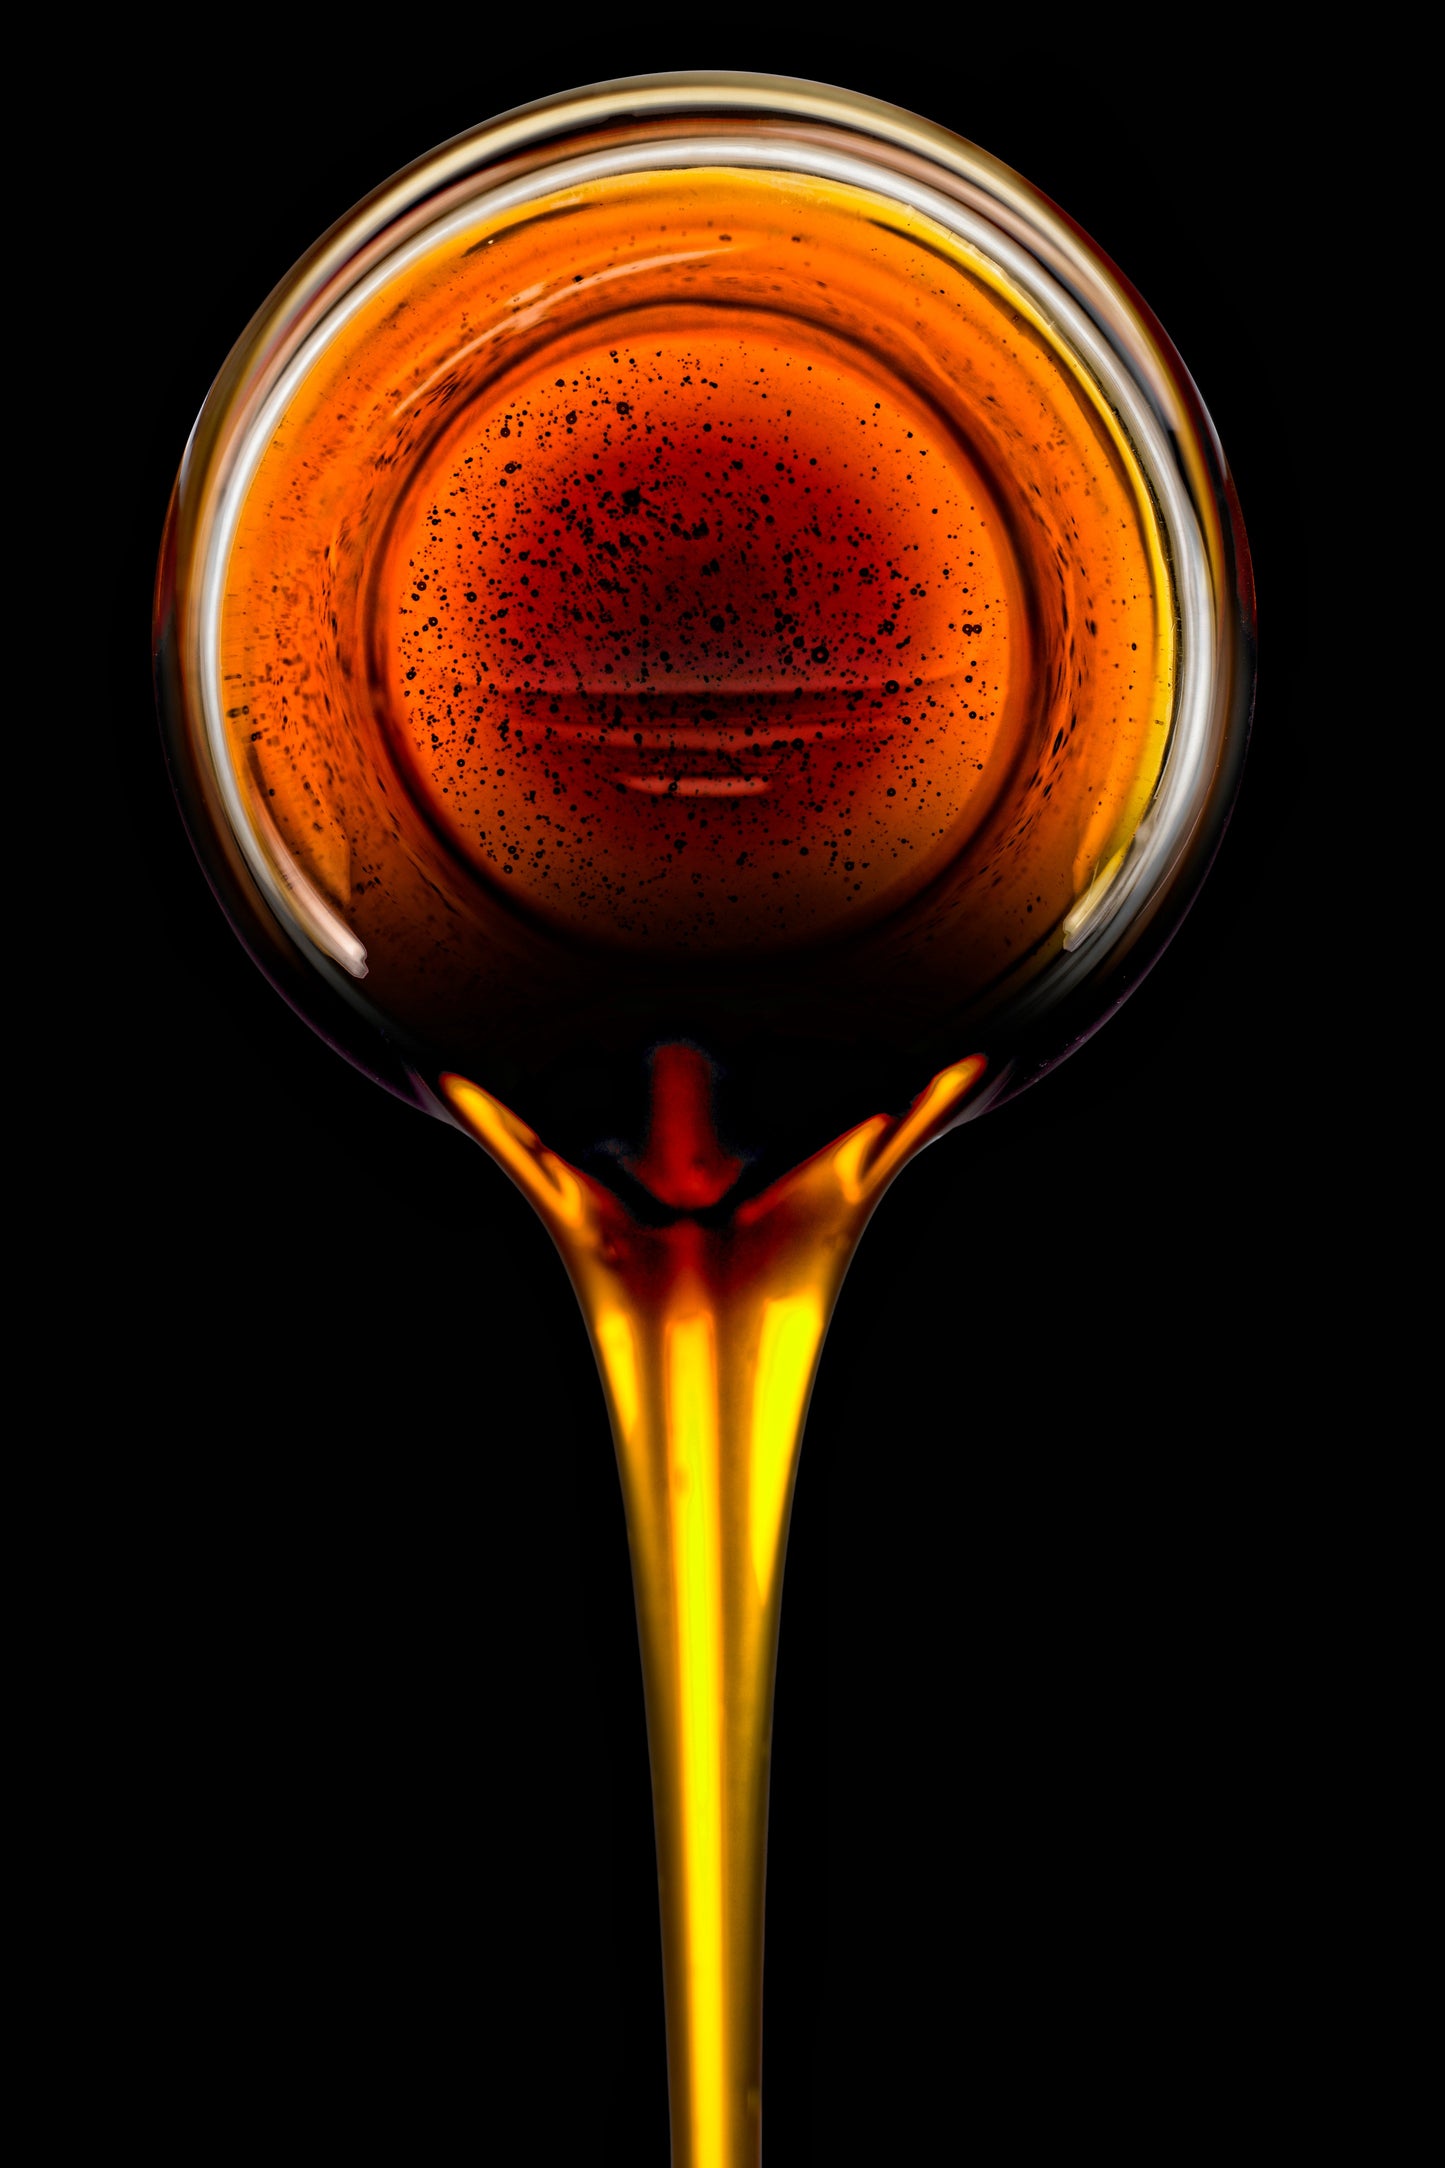 50 HONEY DRIP SORGHUM Bicolor Honey Drop Syrup Grain Vegetable Seeds